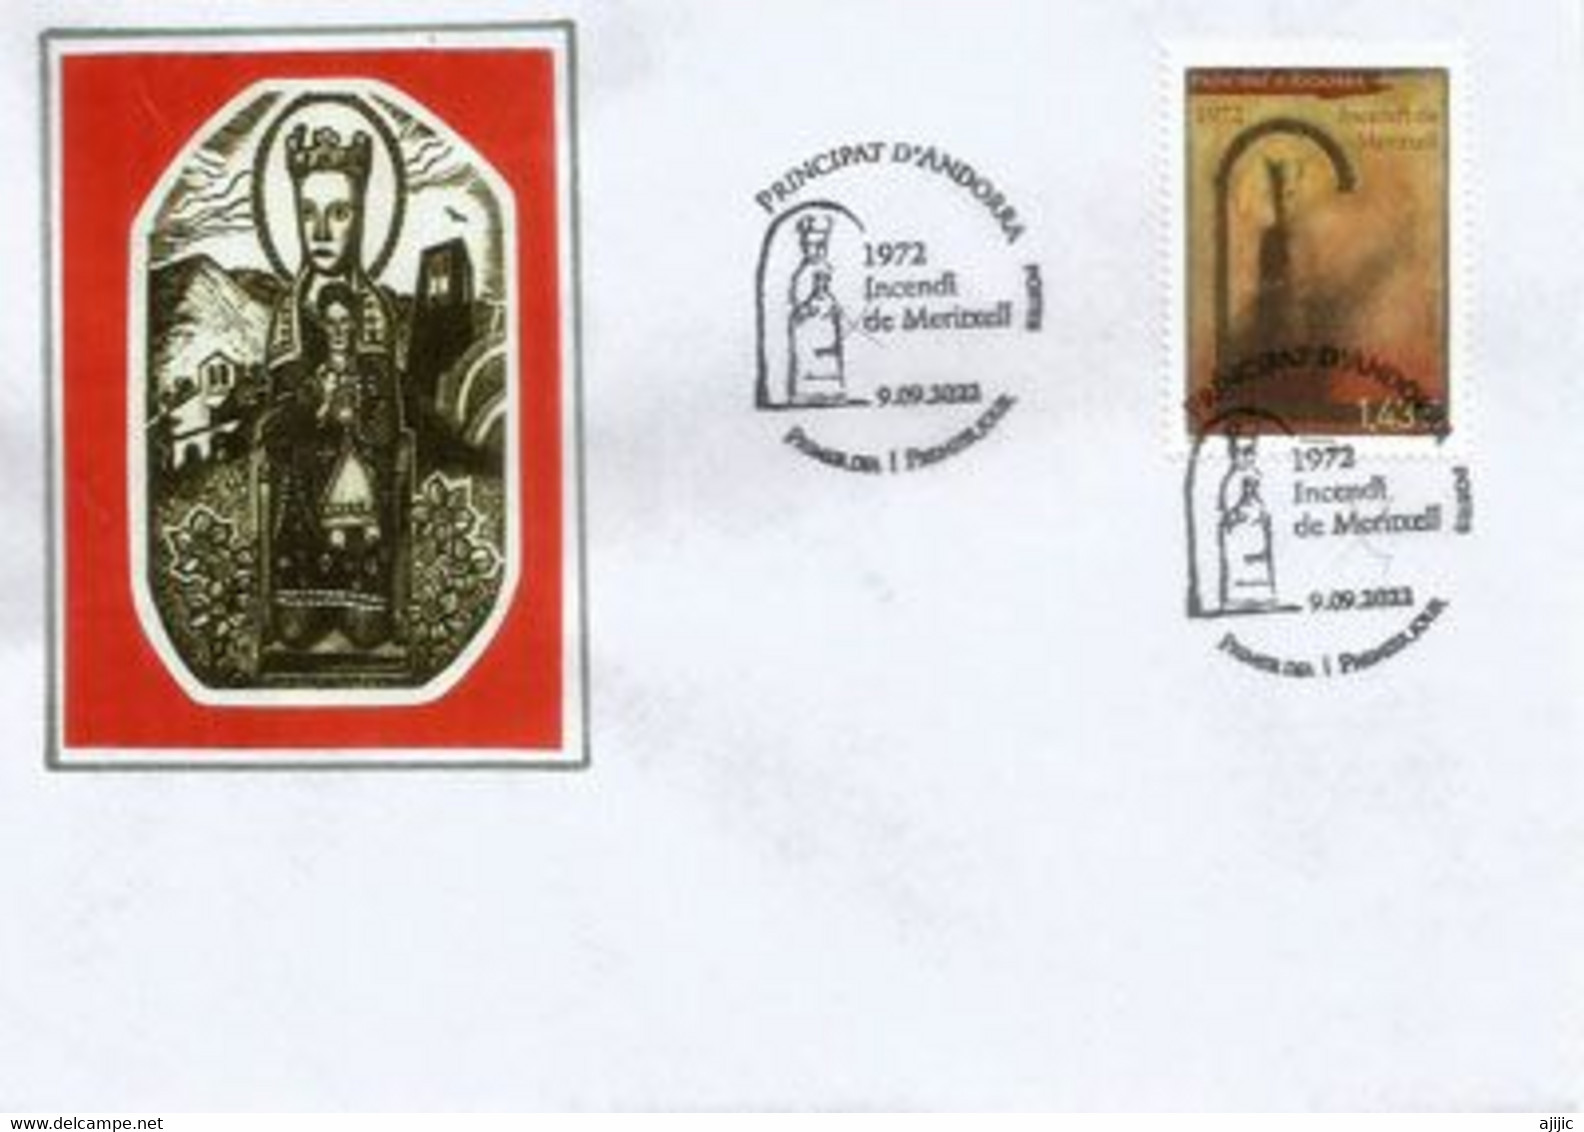 L'incendie Du Sanctuaire Marial De Meritxell. 9 Septembre 1972.  FDC 2022 - Covers & Documents